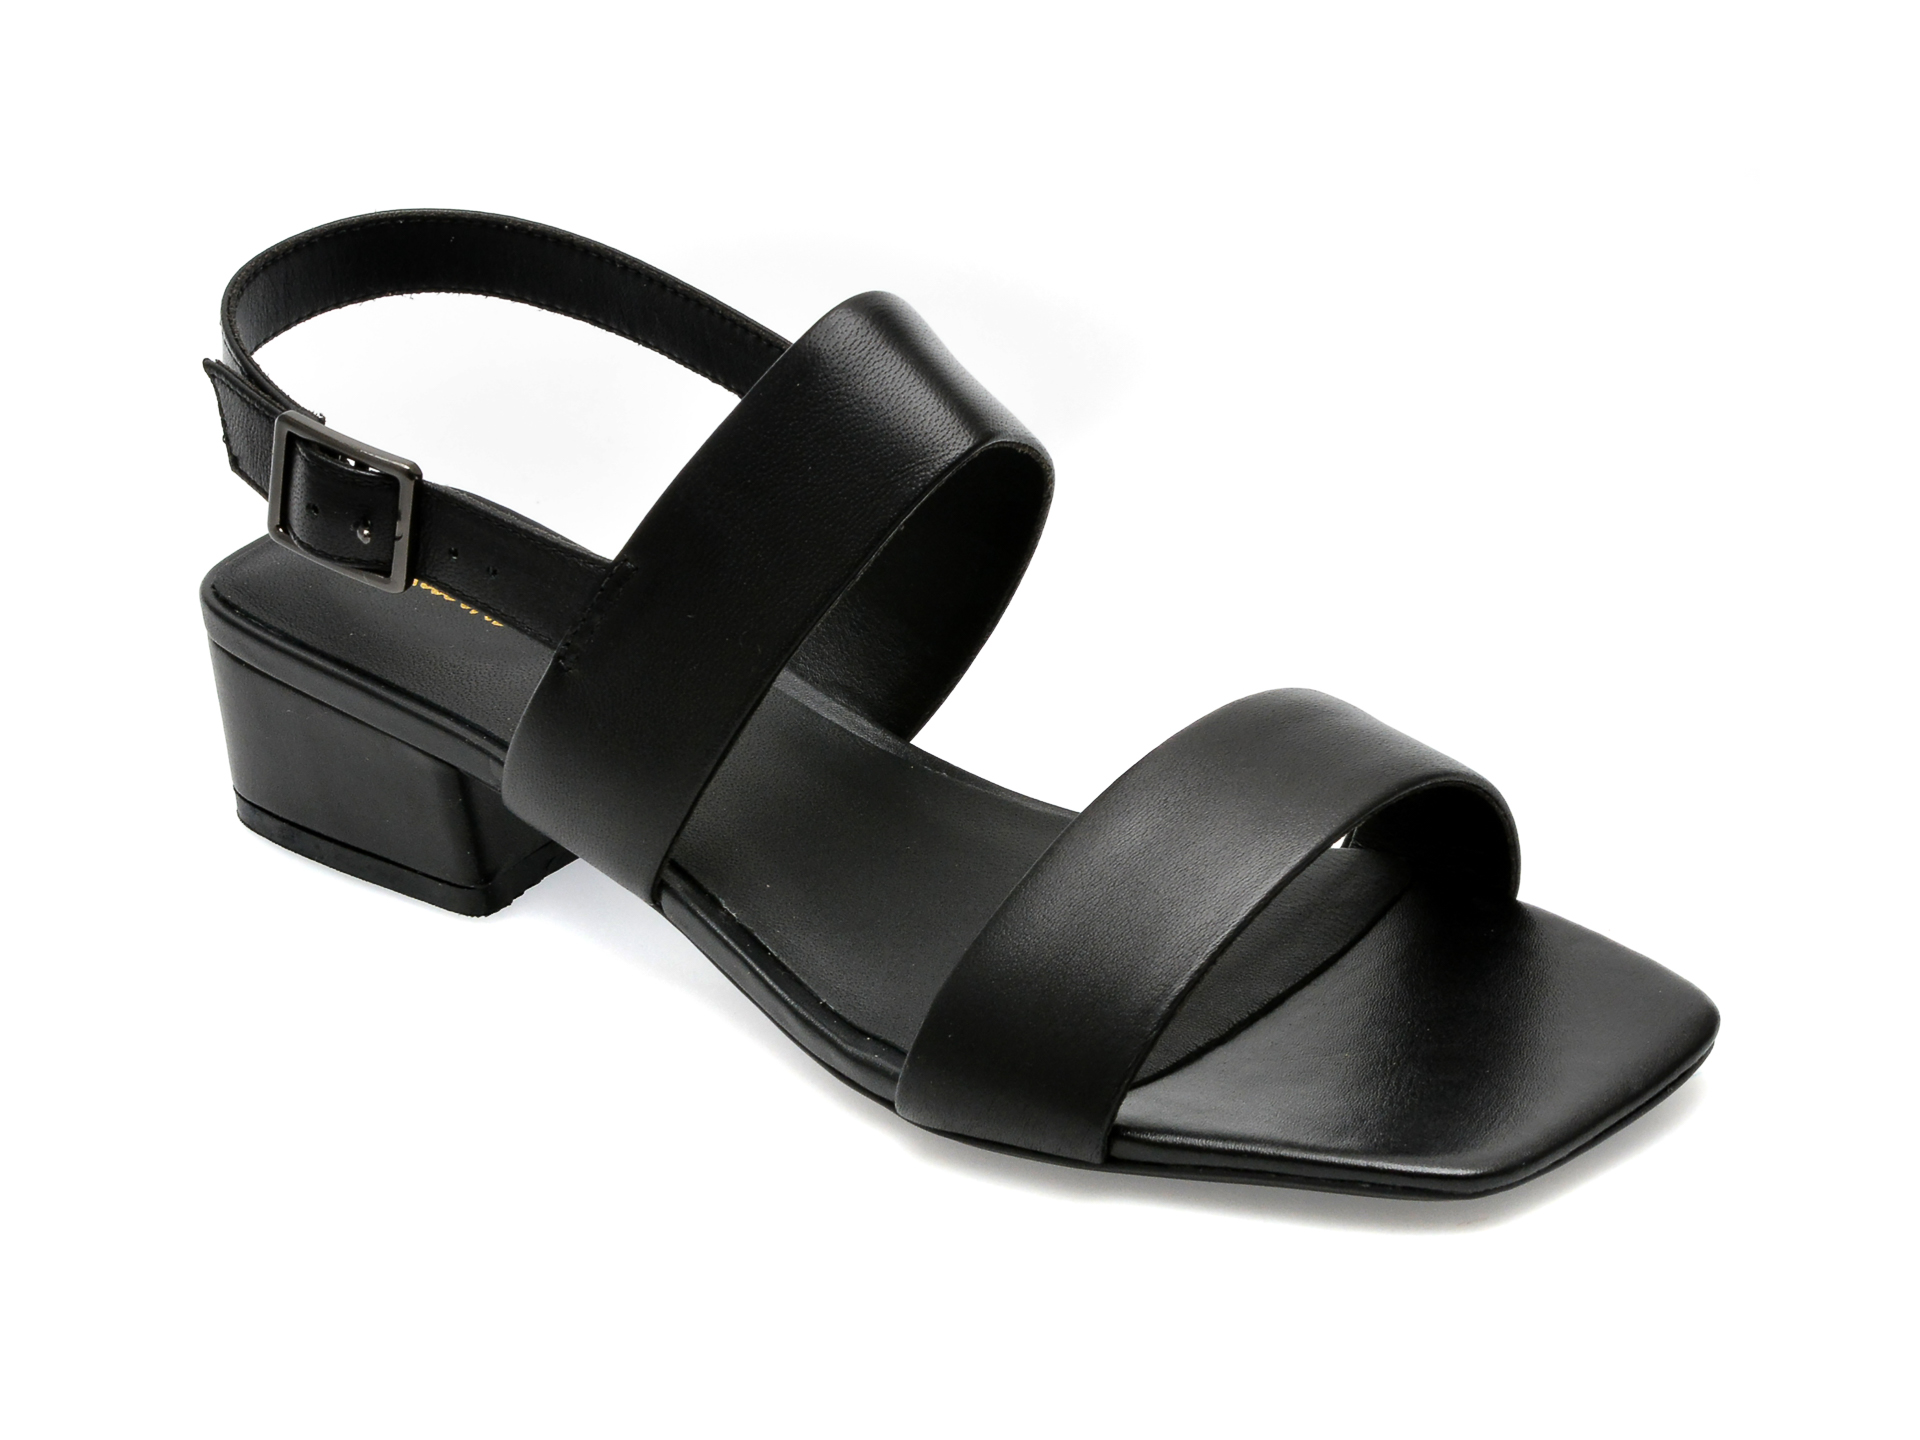 Sandale CLARKS negre, SEREN25 STRAP 01-N, din piele naturala /femei/sandale